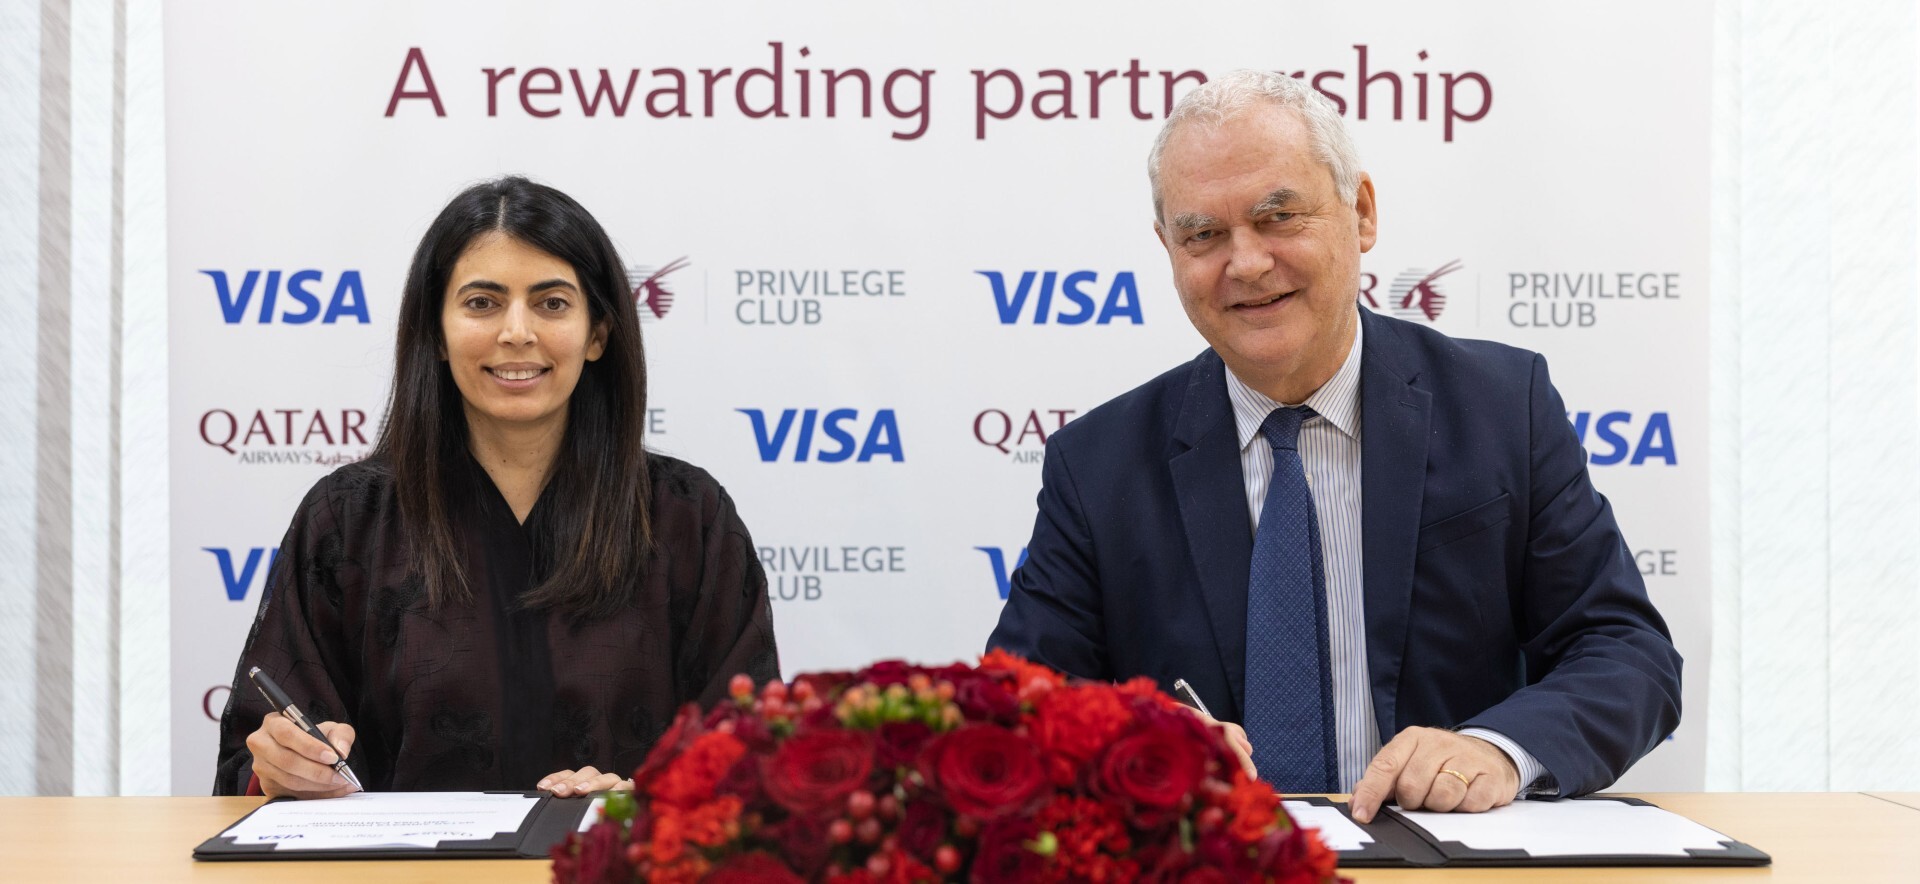 โปรแกรม Qatar Airways Privilege Club และ Visa ประกาศความร่วมมือเป็นพันธมิตรระดับโลกสุดพิเศษเป็นระยะเวลา 10 ปี